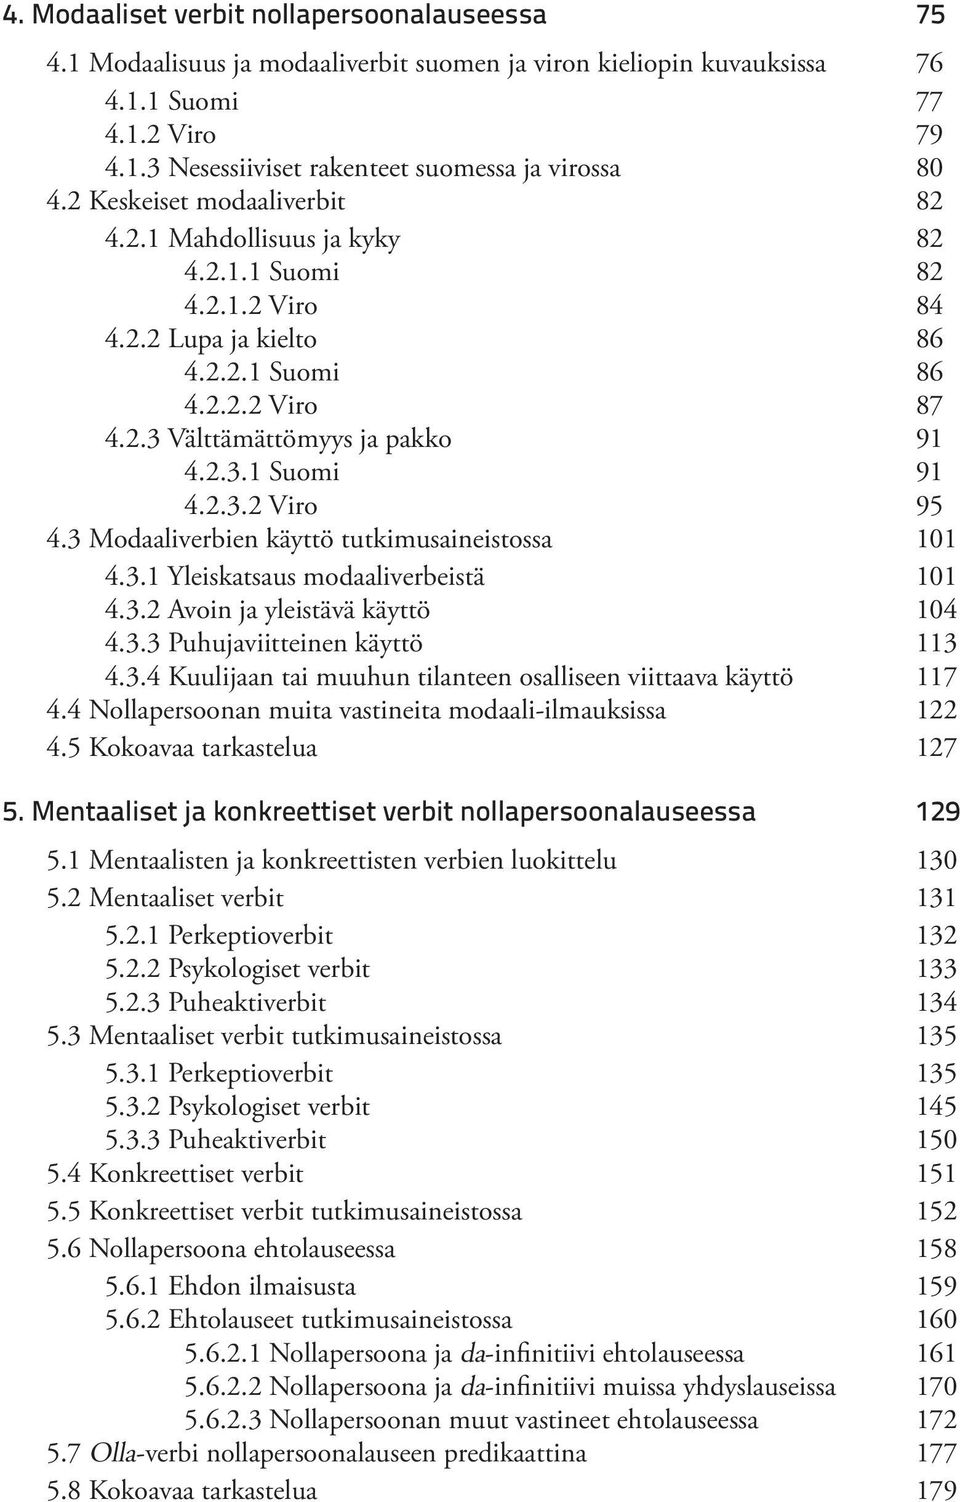 2.3.2 Viro 95 4.3 Modaaliverbien käyttö tutkimusaineistossa 101 4.3.1 Yleiskatsaus modaaliverbeistä 101 4.3.2 Avoin ja yleistävä käyttö 104 4.3.3 Puhujaviitteinen käyttö 113 4.3.4 Kuulijaan tai muuhun tilanteen osalliseen viittaava käyttö 117 4.